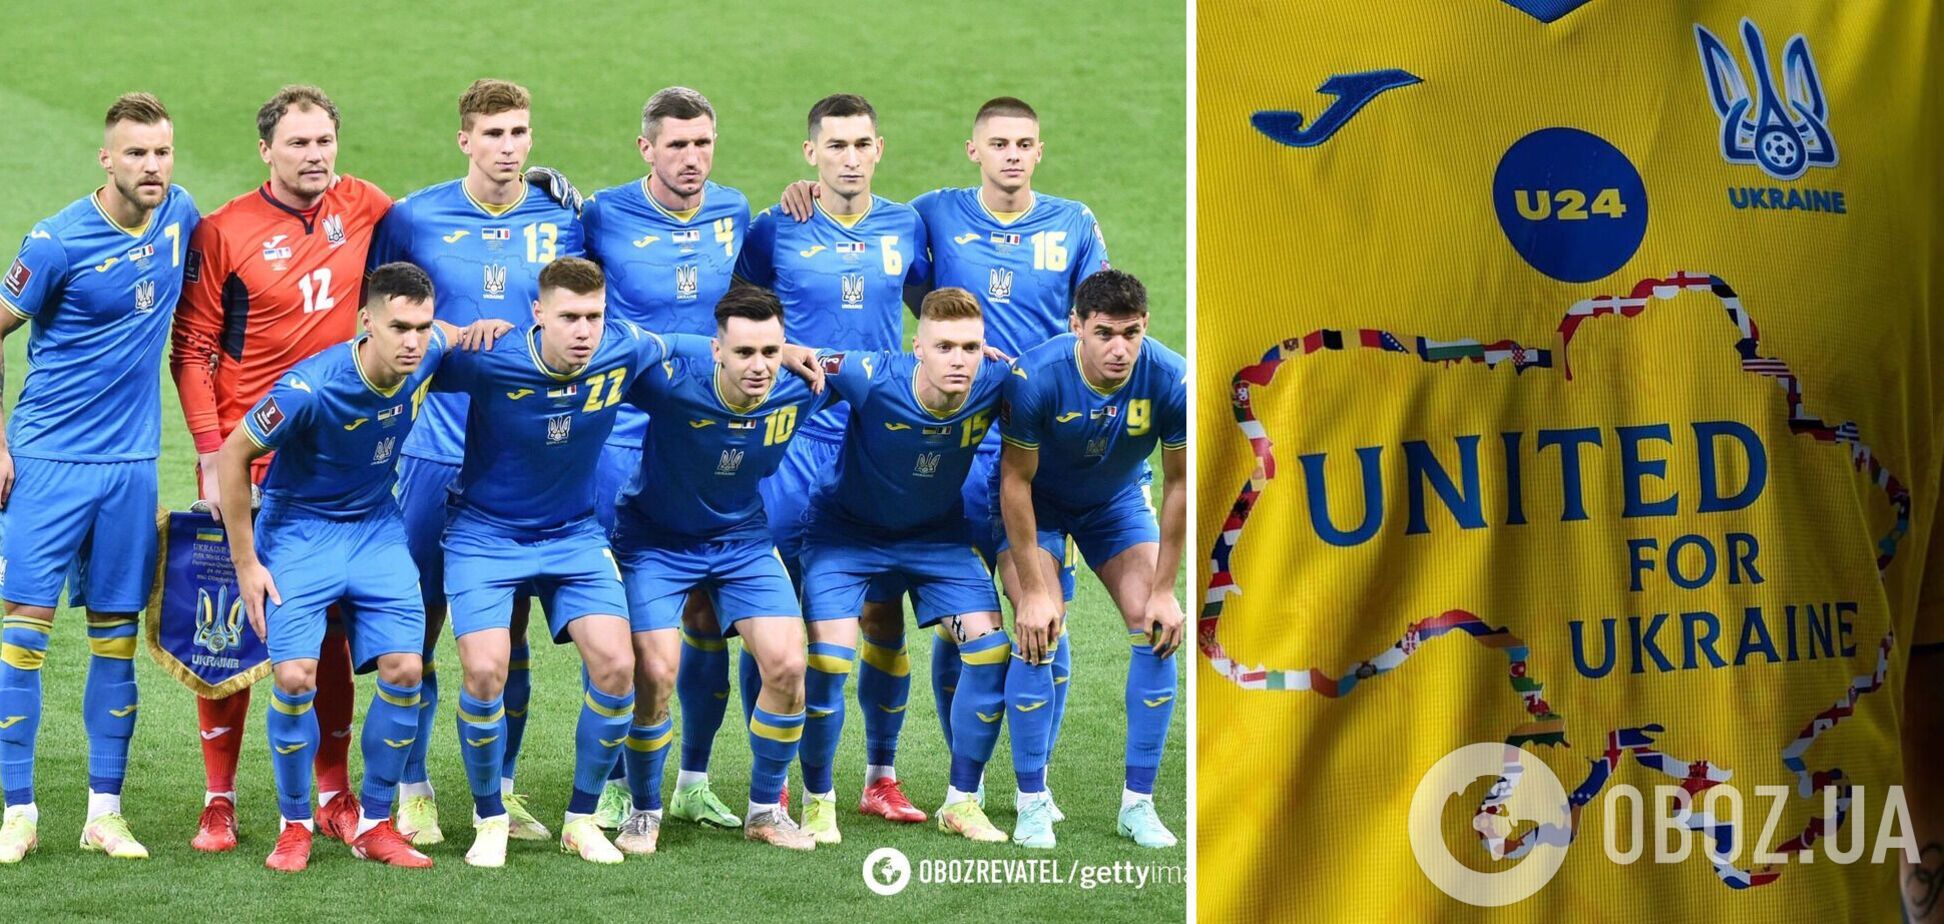 Нова форма збірної України з футболу